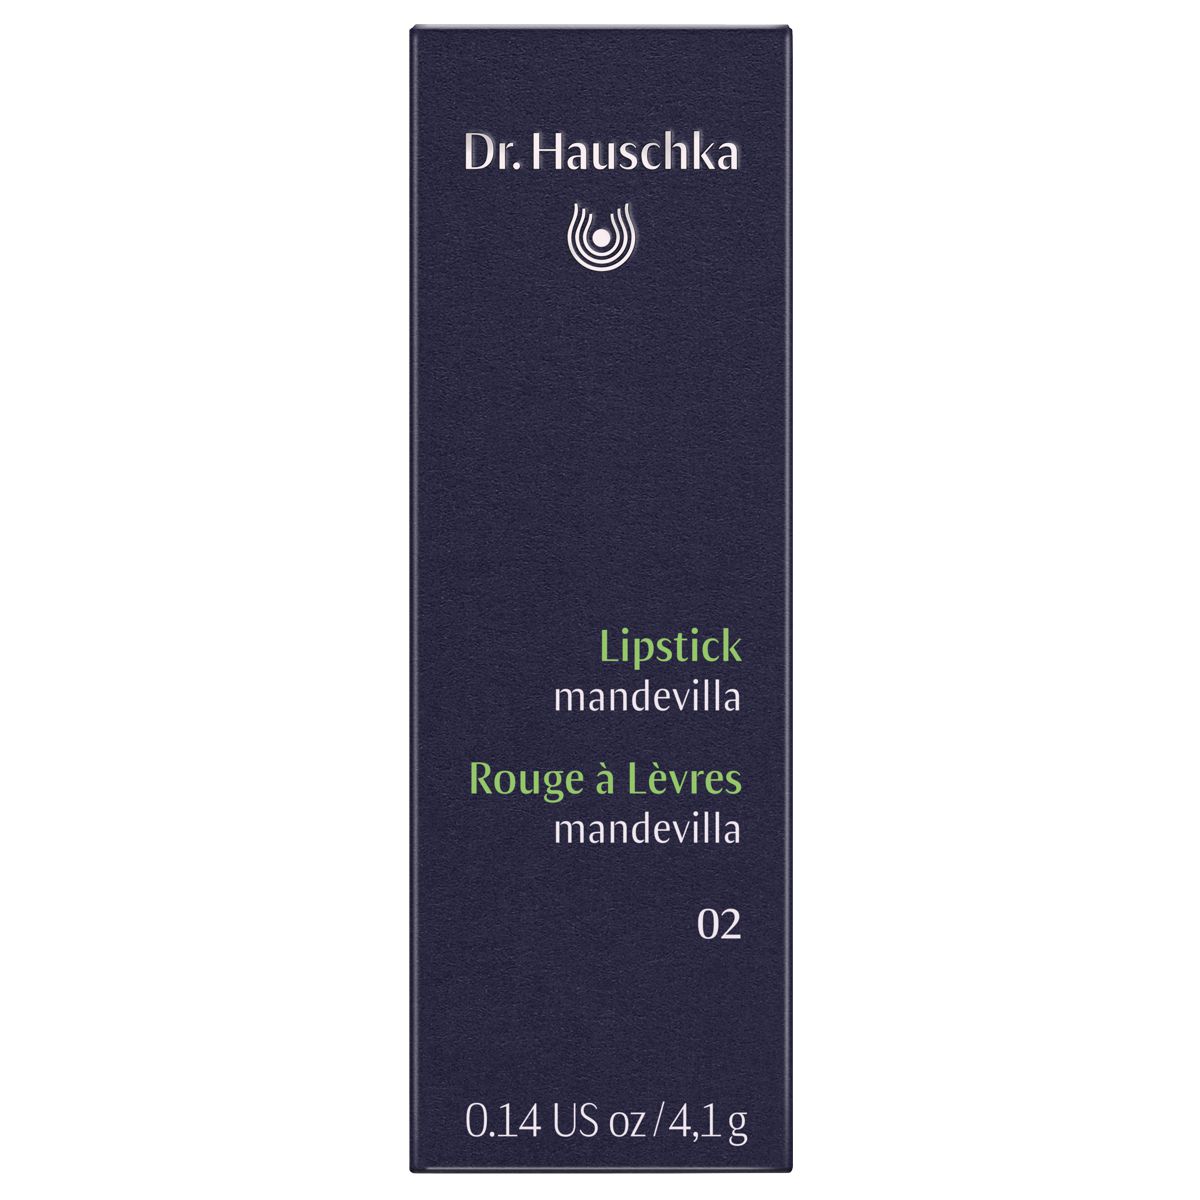 Dr_Hauschka_Lipstick_02_mandeville_online_kaufen